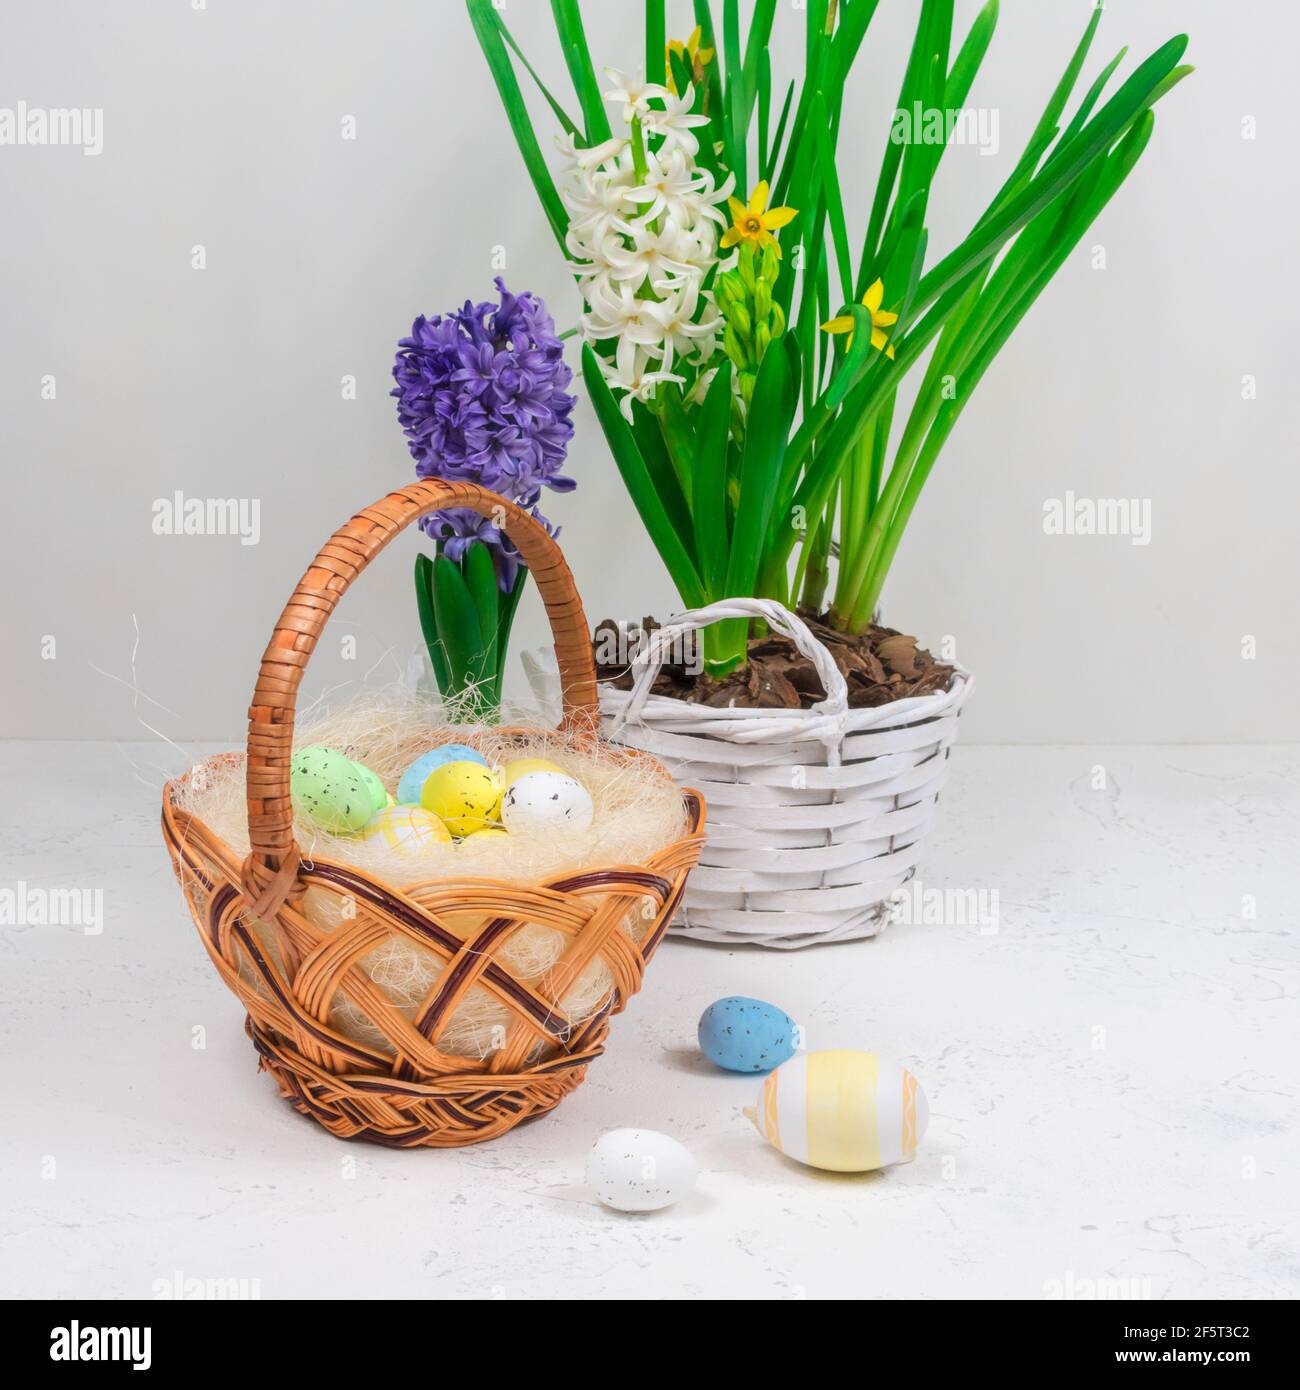 Osterfeiertagskonzept. Weidenkorb mit Wachteleiern auf einem Hintergrund aus gelben Narzissen und blauen Hyazinthen auf einem weißen Tisch. Stockfoto